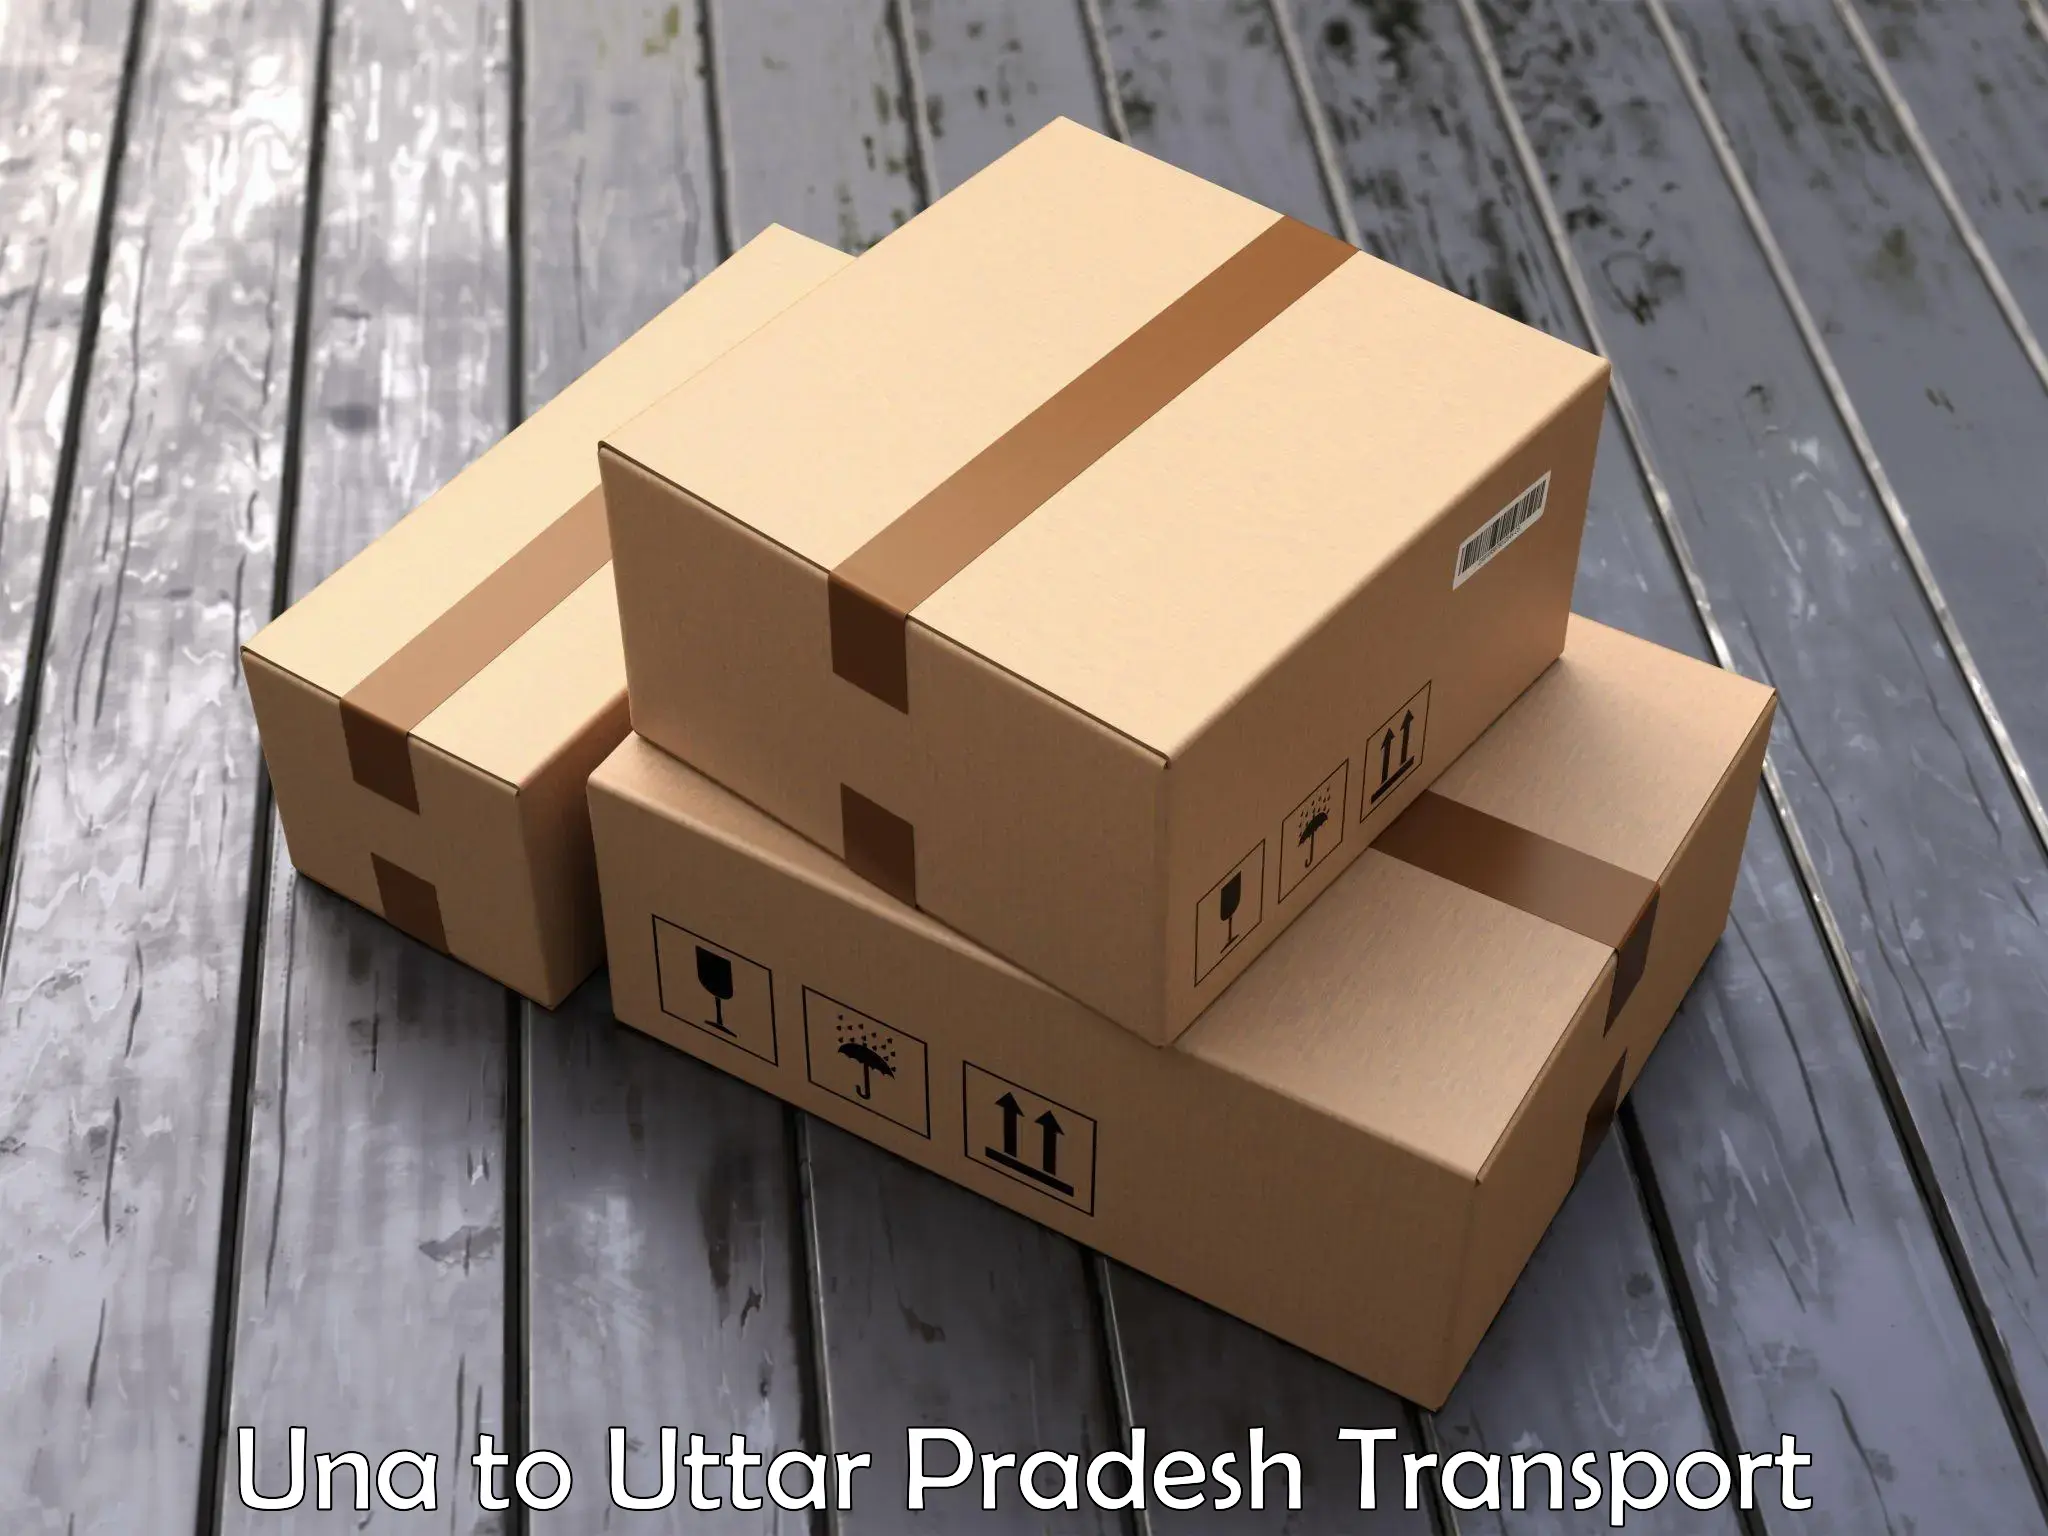 Container transport service Una to Vrindavan